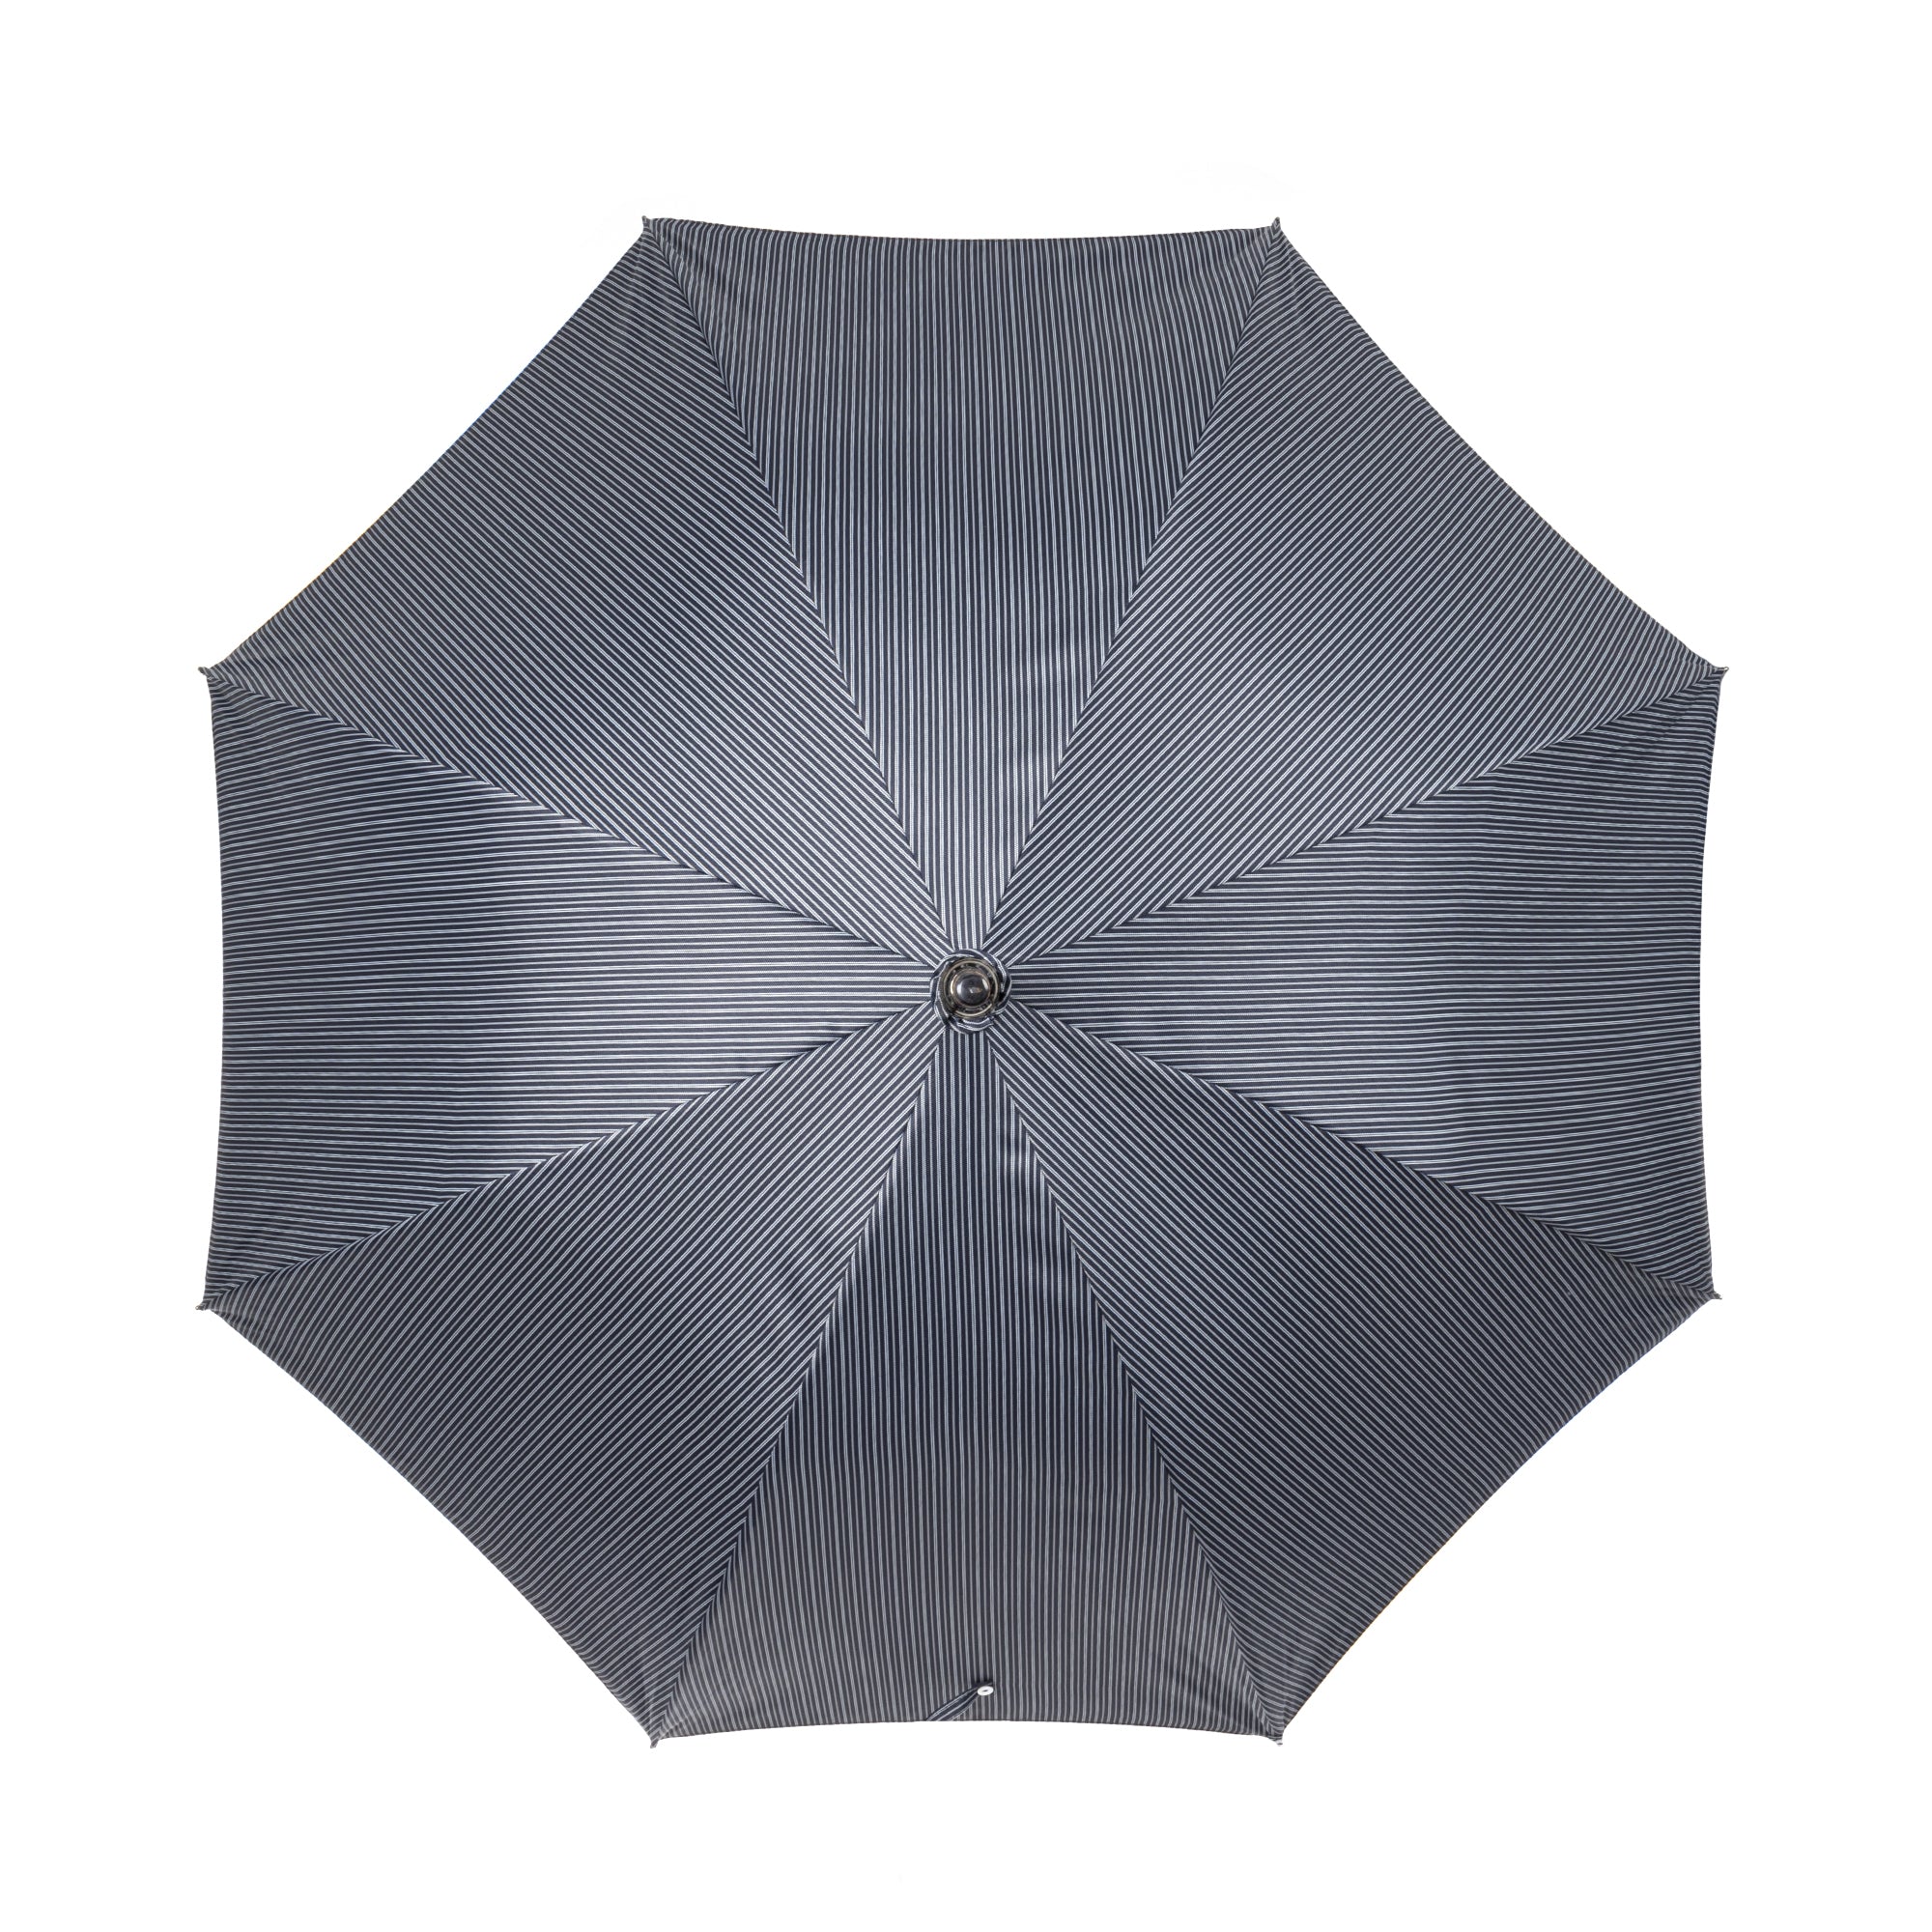 Shiny Indonesian Malacca Umbrella